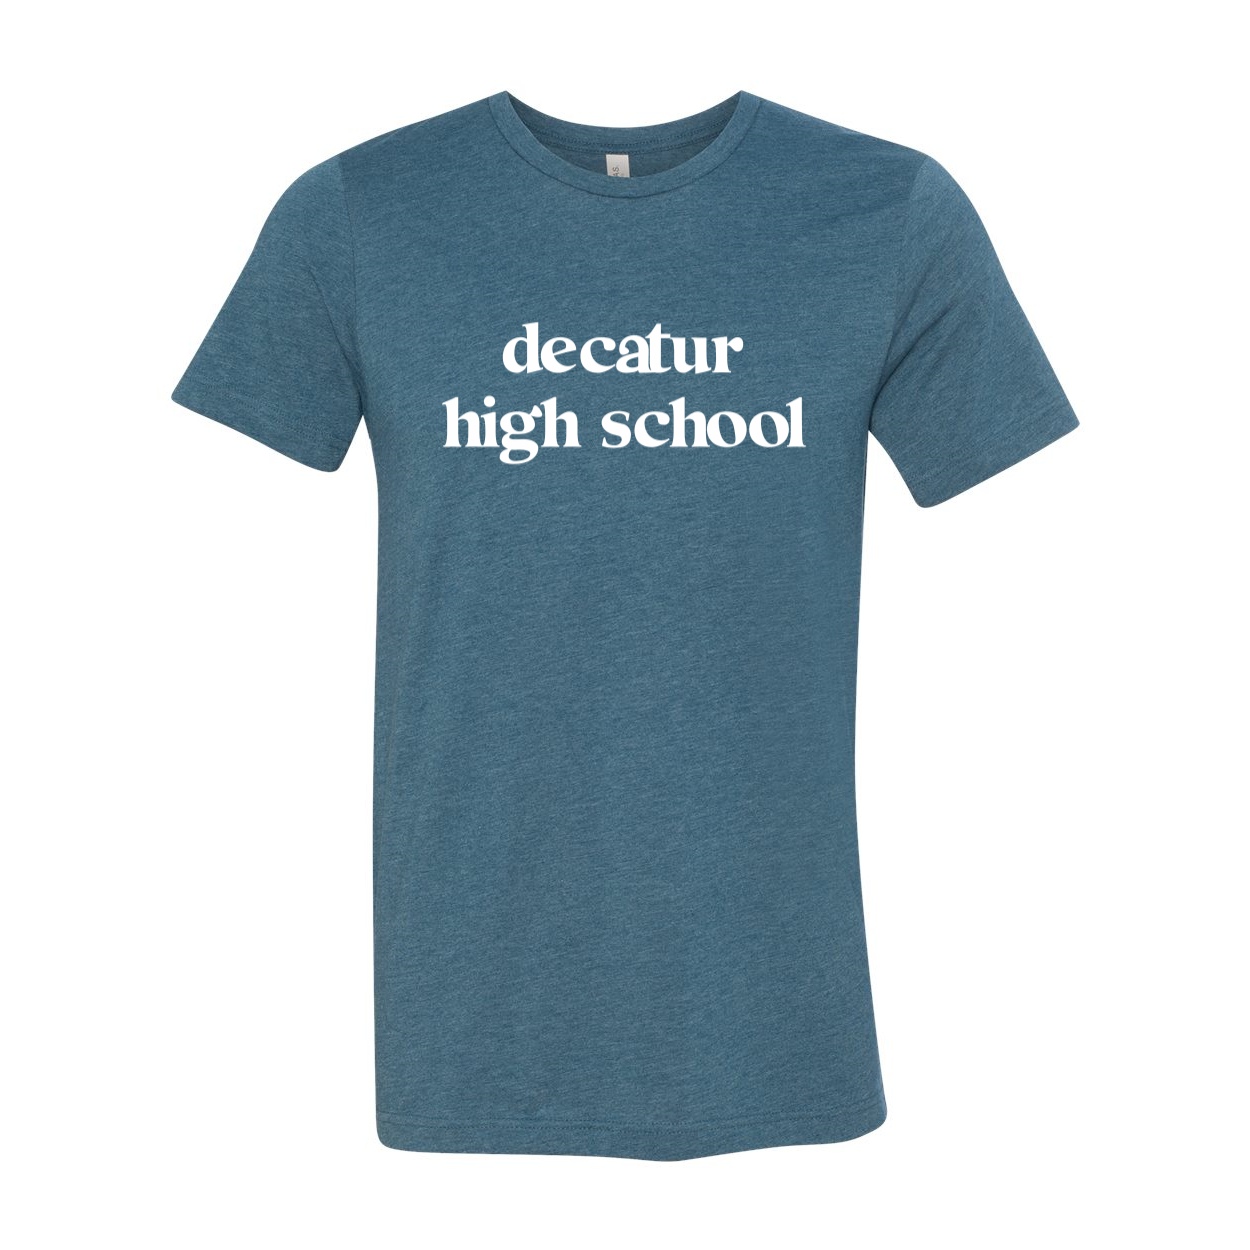 Decatur High School Soft Shirt